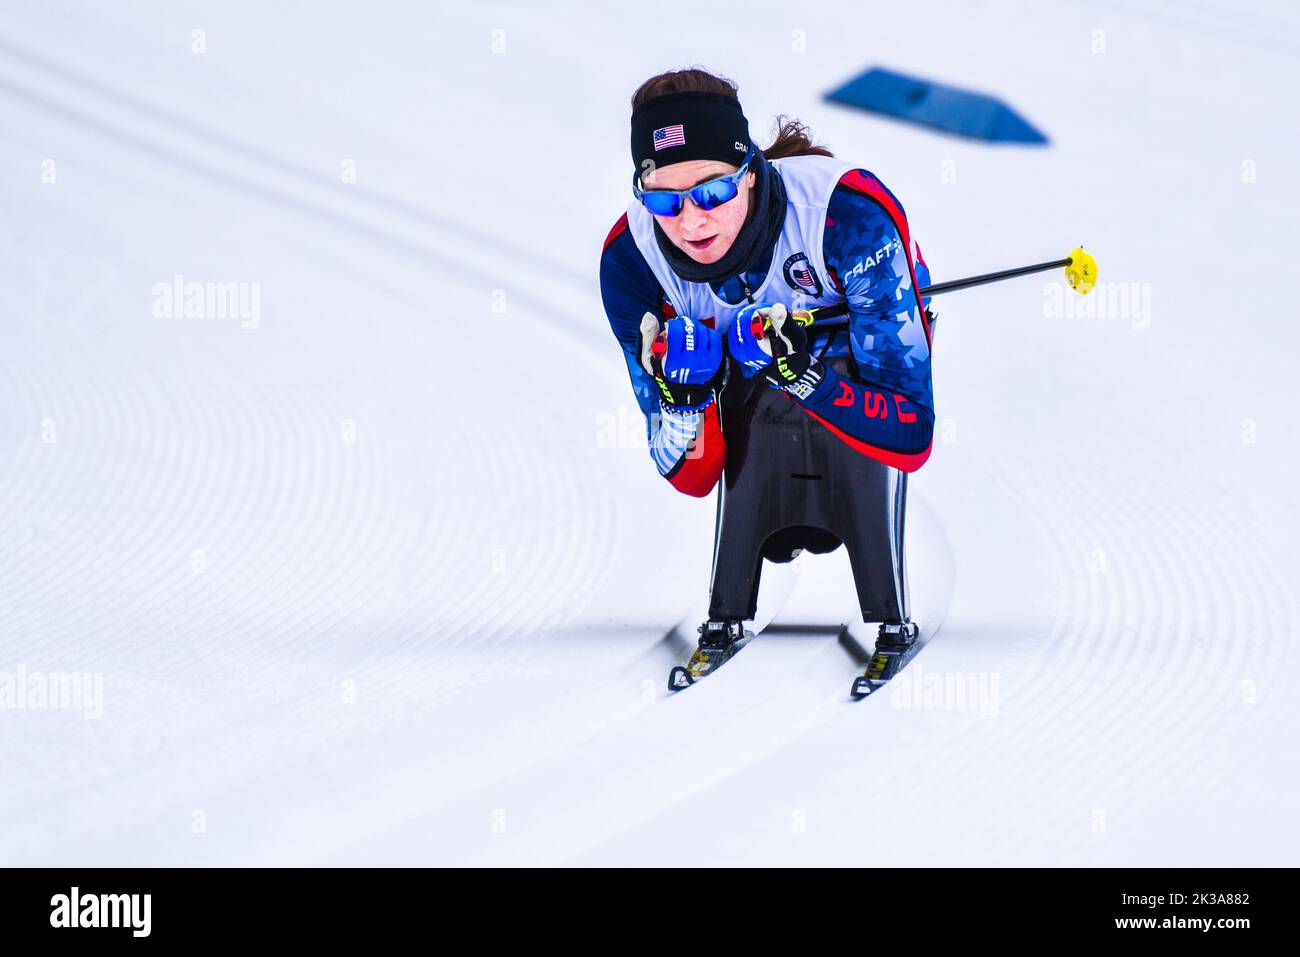 L'atleta Kendall Gretsch ha una discesa in discesa presso il 2019° campionato nazionale di sci di fondo allo U.S. Paralympic al Craftsbury Outdoor Center, Vermont, USA. Foto Stock